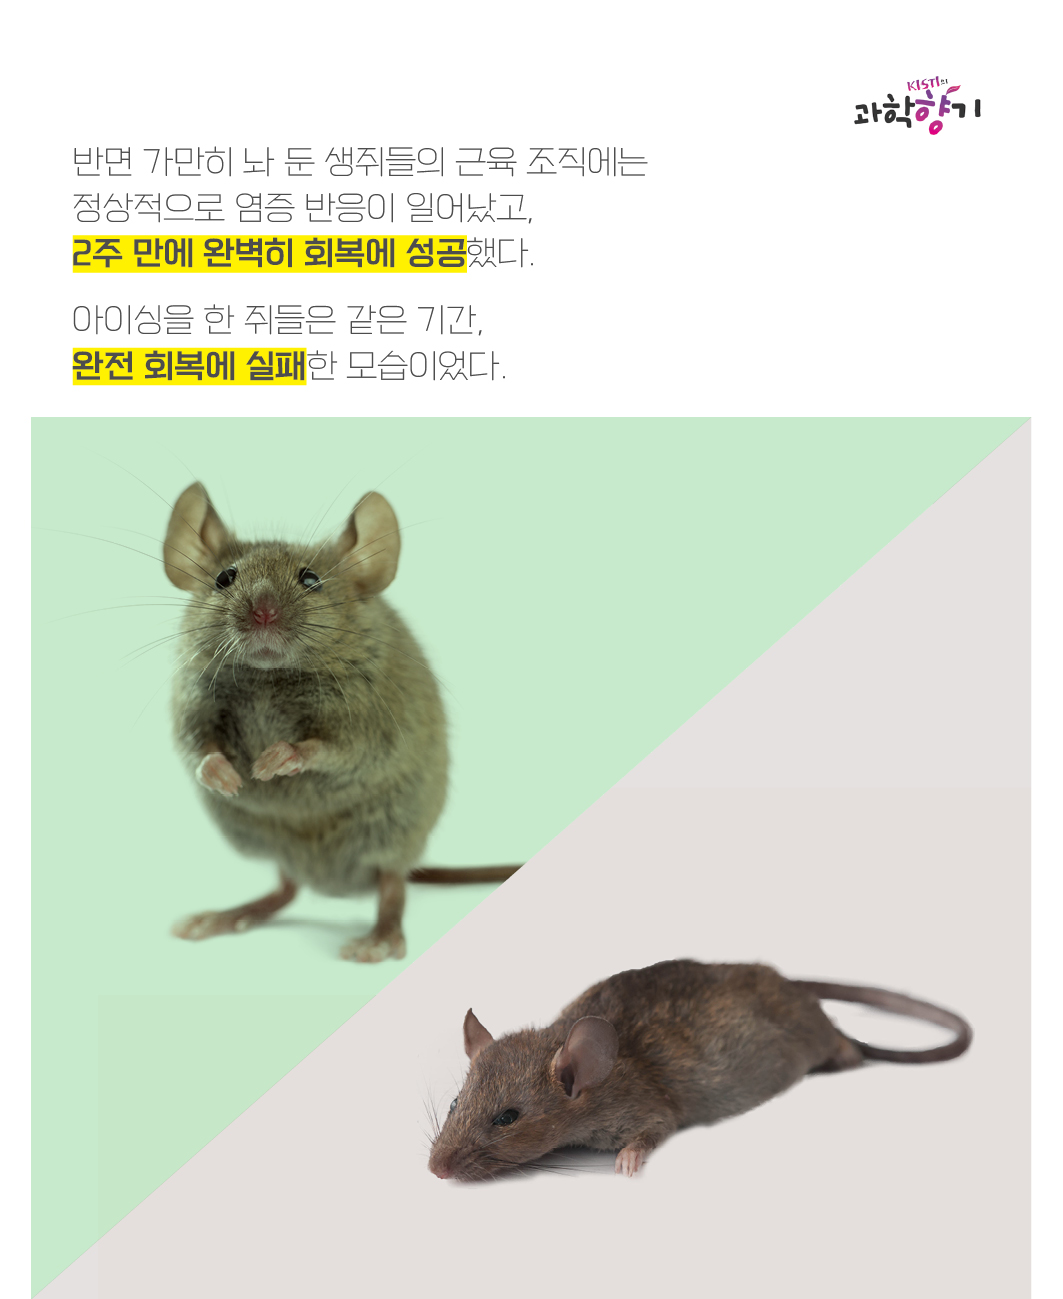 반면 가만히 놔 둔 생쥐들의 근육 조직에는 정상적으로 염증 반응이 일어났고, 2주 만에 완벽히 회복에 성공했다.   아이싱을 한 쥐들은 같은 기간, 완전 회복에 실패한 모습이었다.